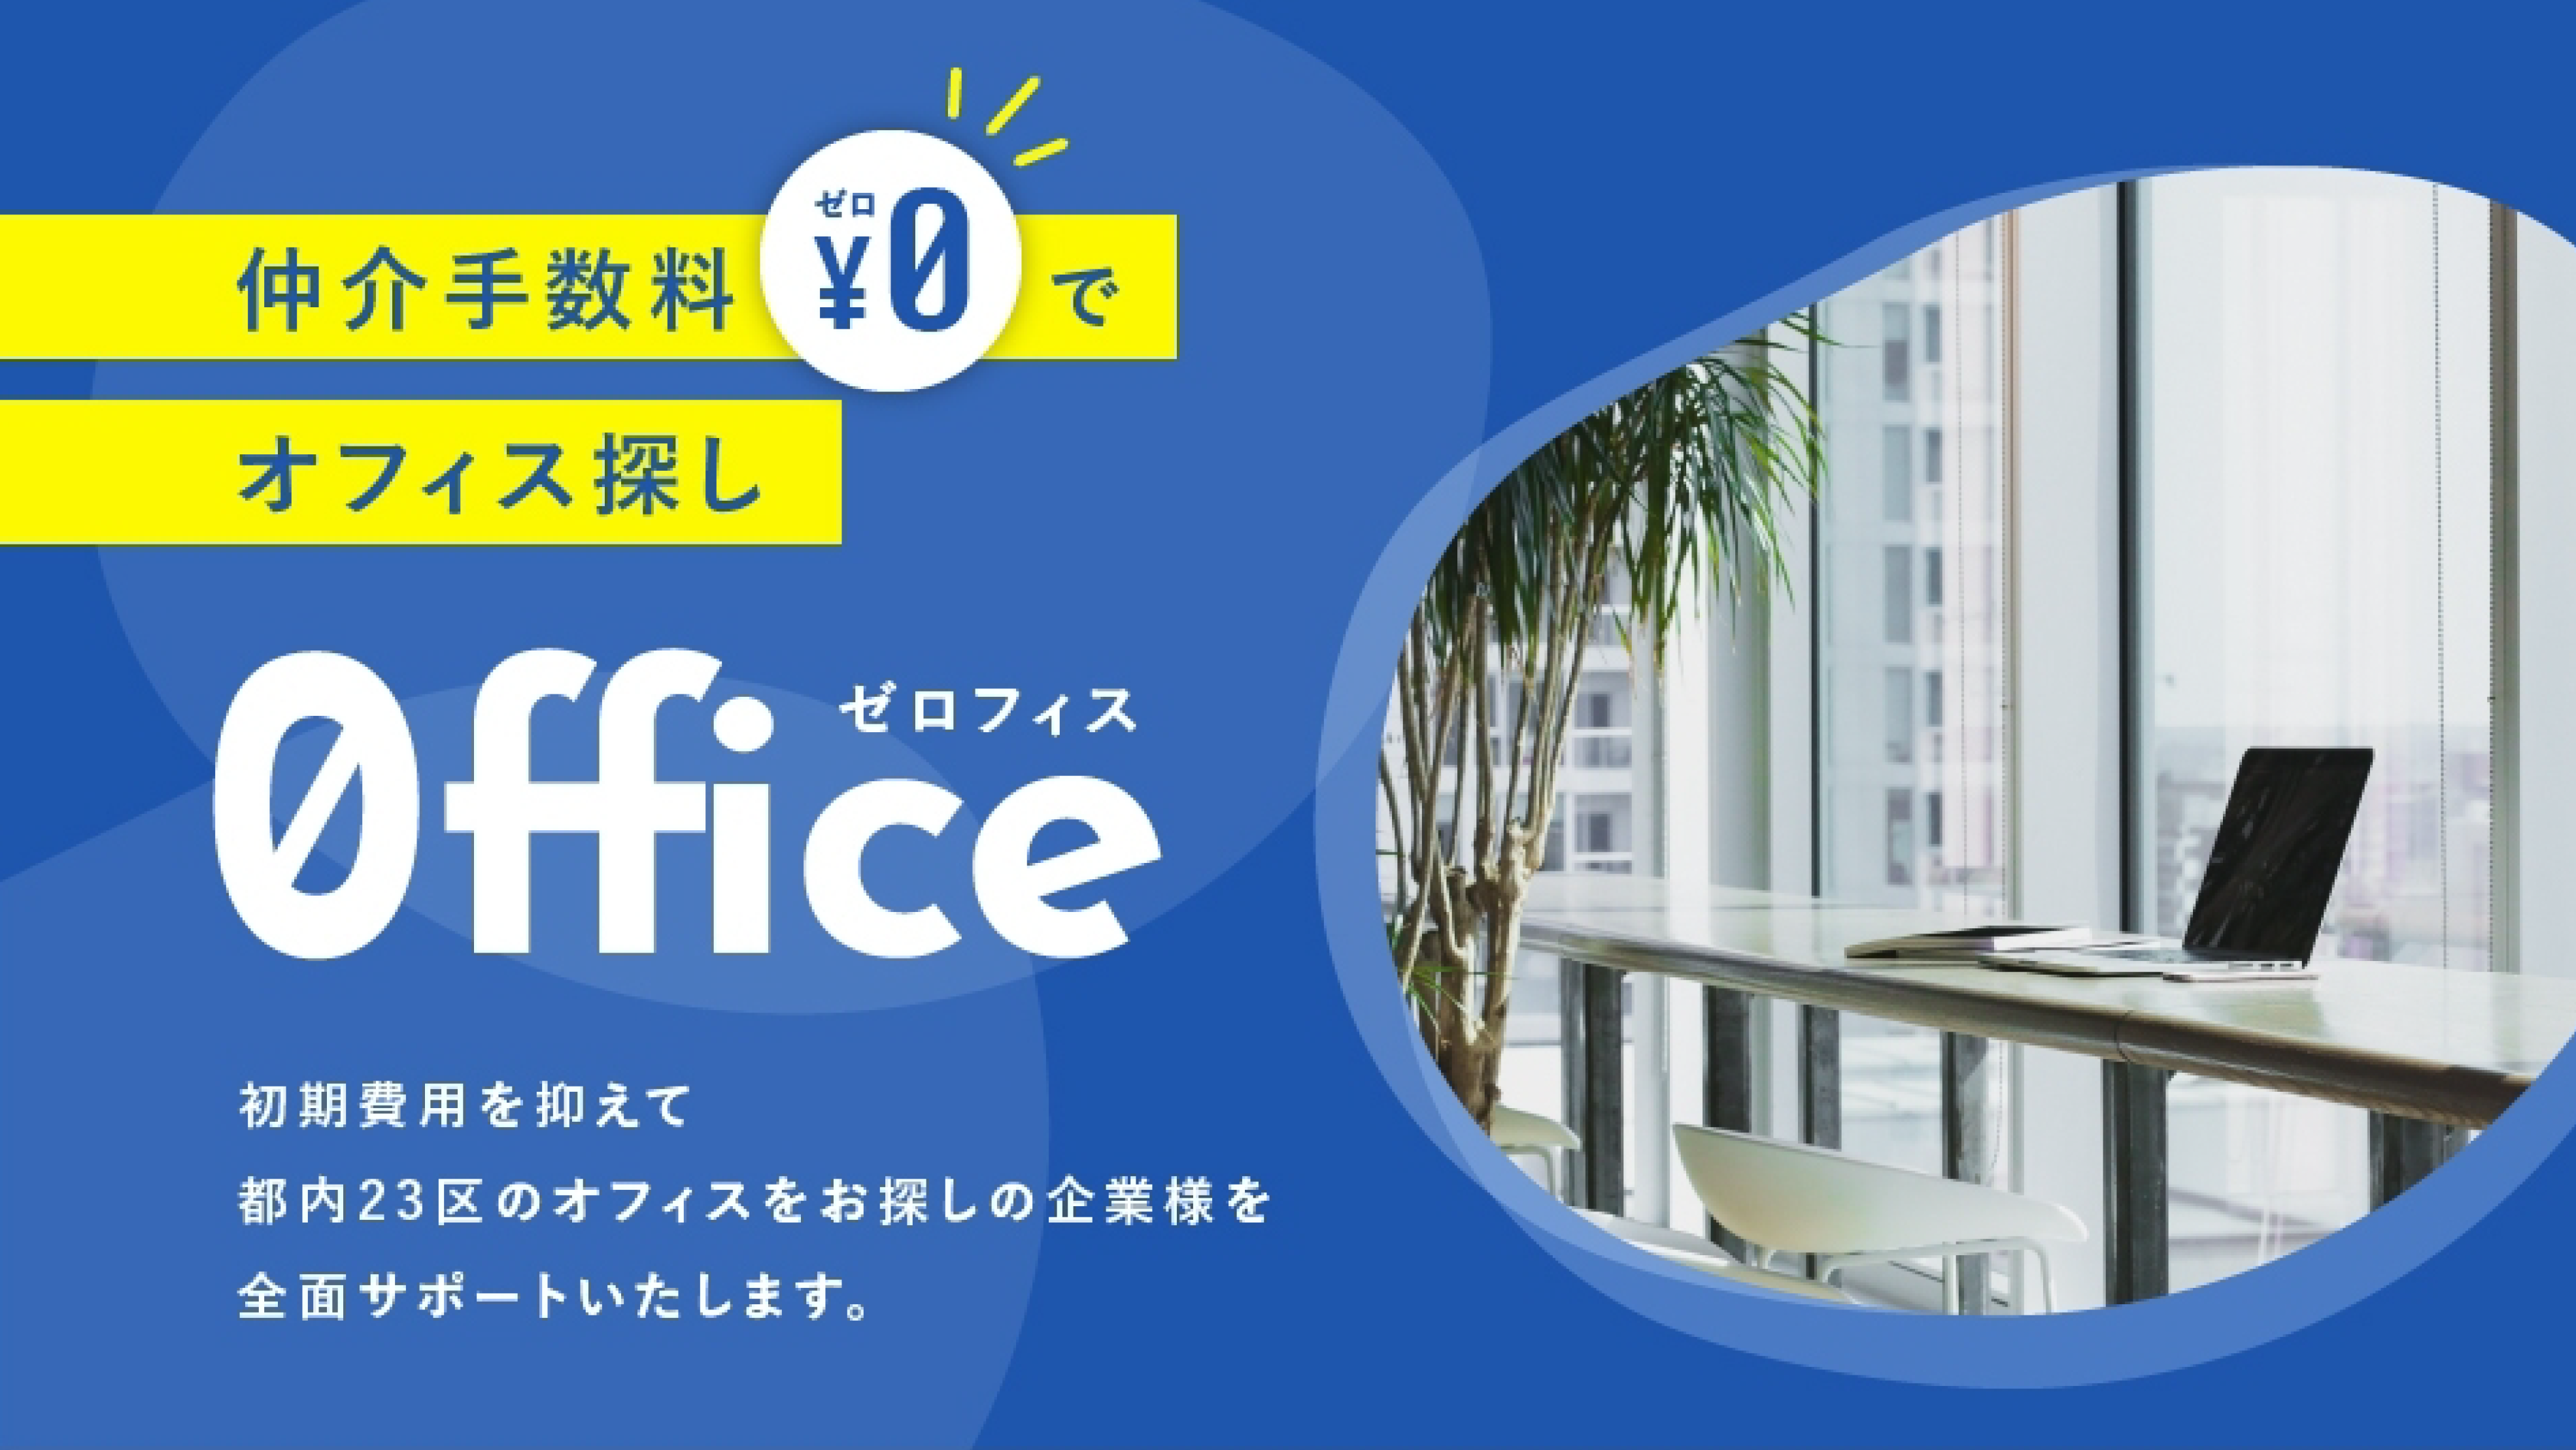 ゼロフィス 仲介手数料¥0でオフィス探し　ゼロオフィス 初期費用を抑えて都内23区のオフィスを全面サポートいたします。